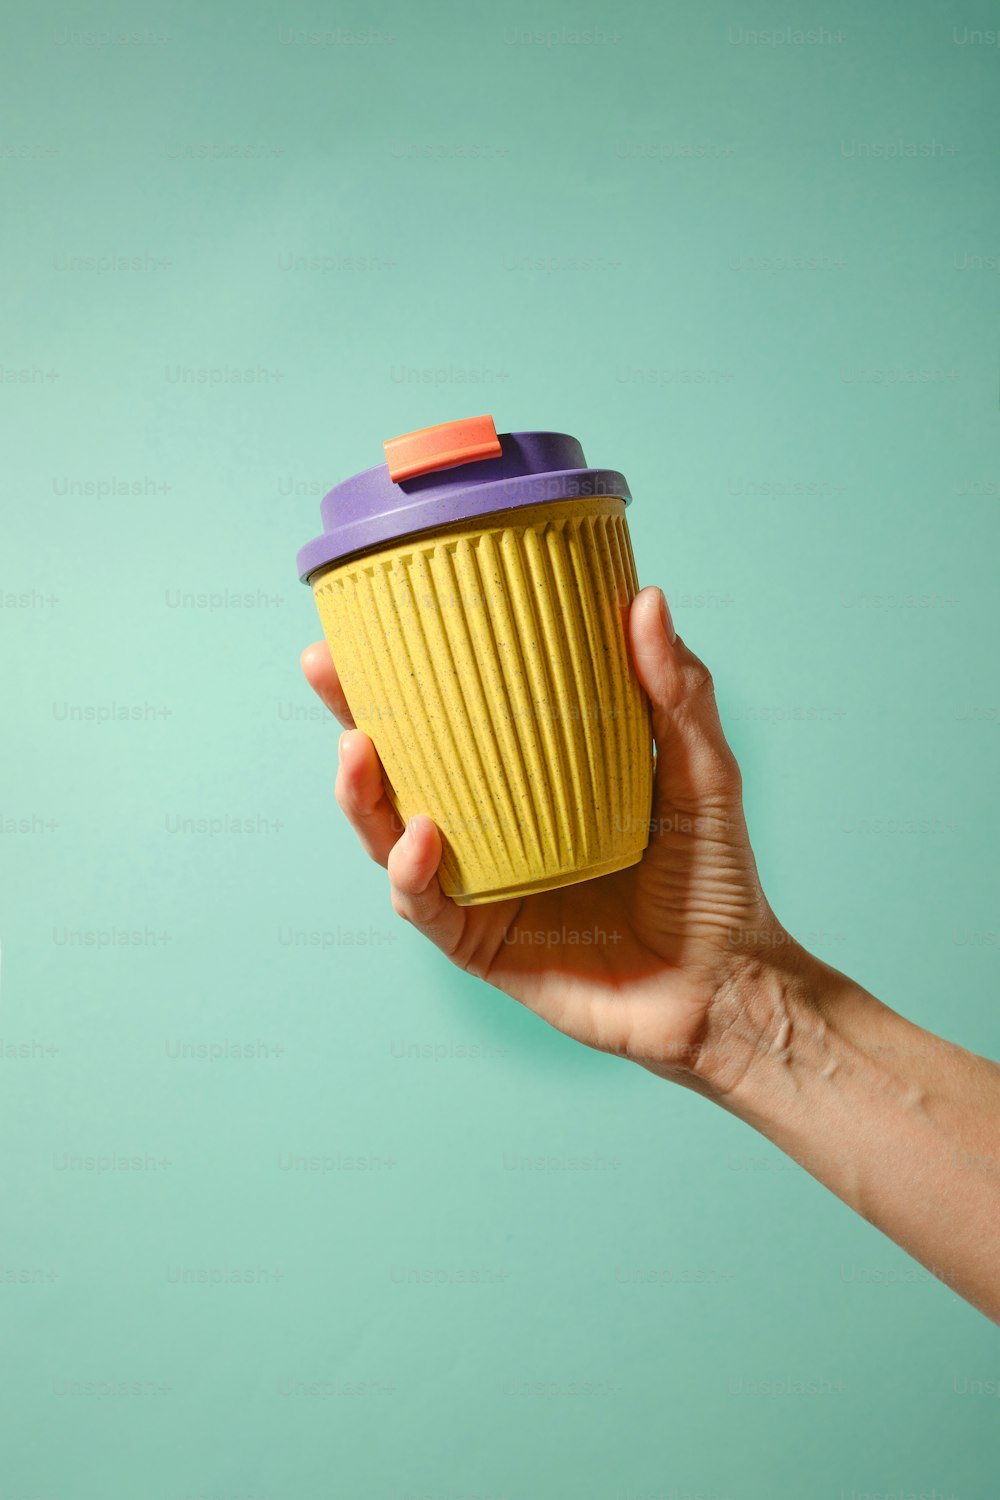 una mano che tiene una tazza gialla con un coperchio viola